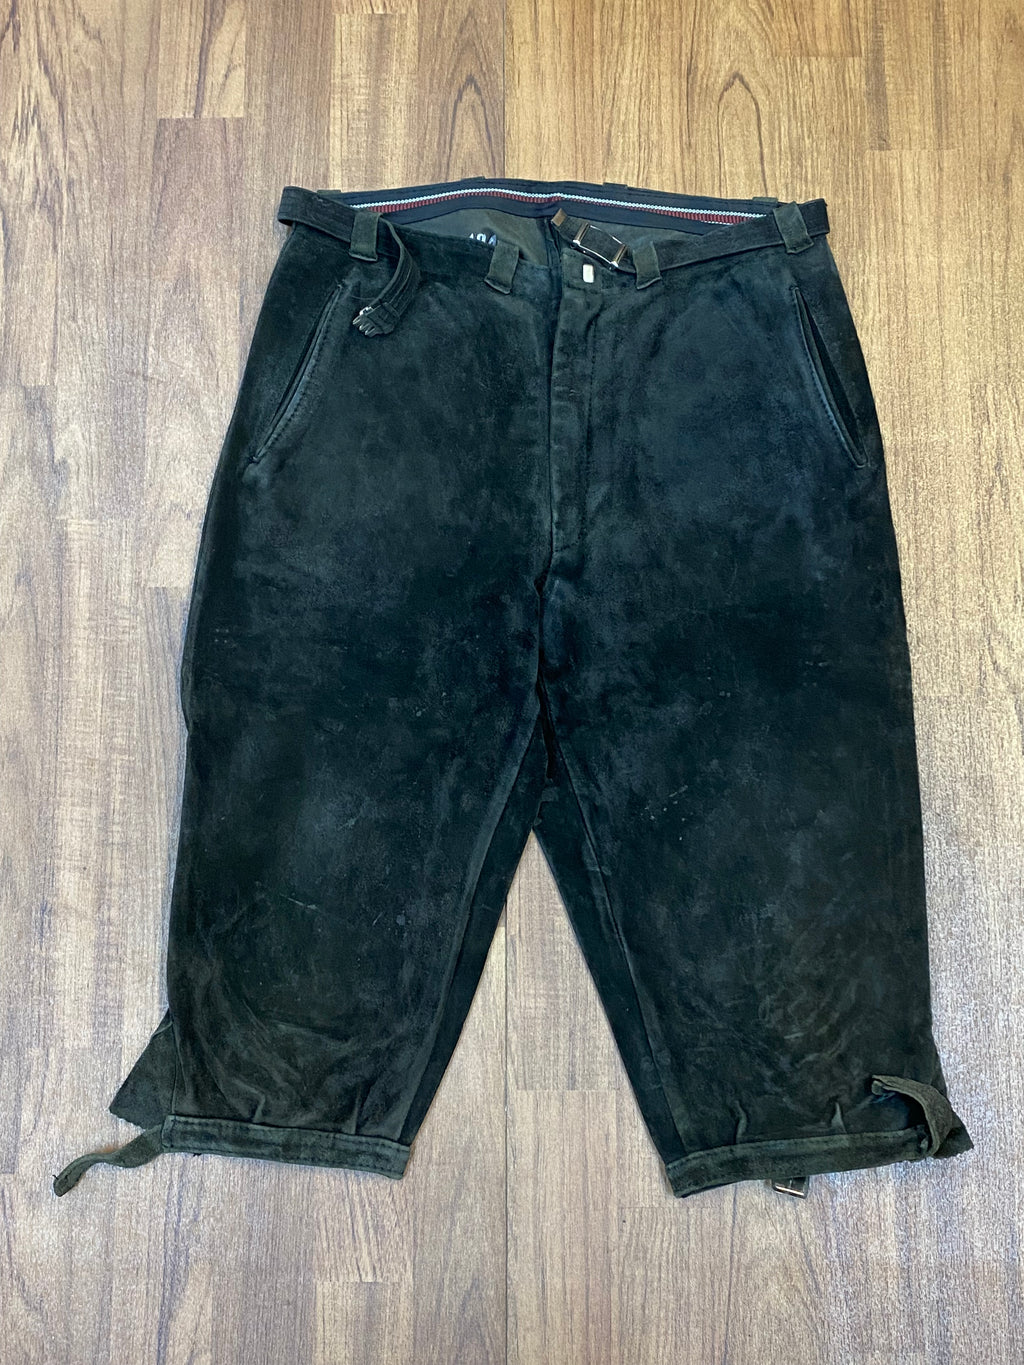 Trachtenkniebundhose aus Leder dunkelgrün Vintage Bund 87 cm Herren